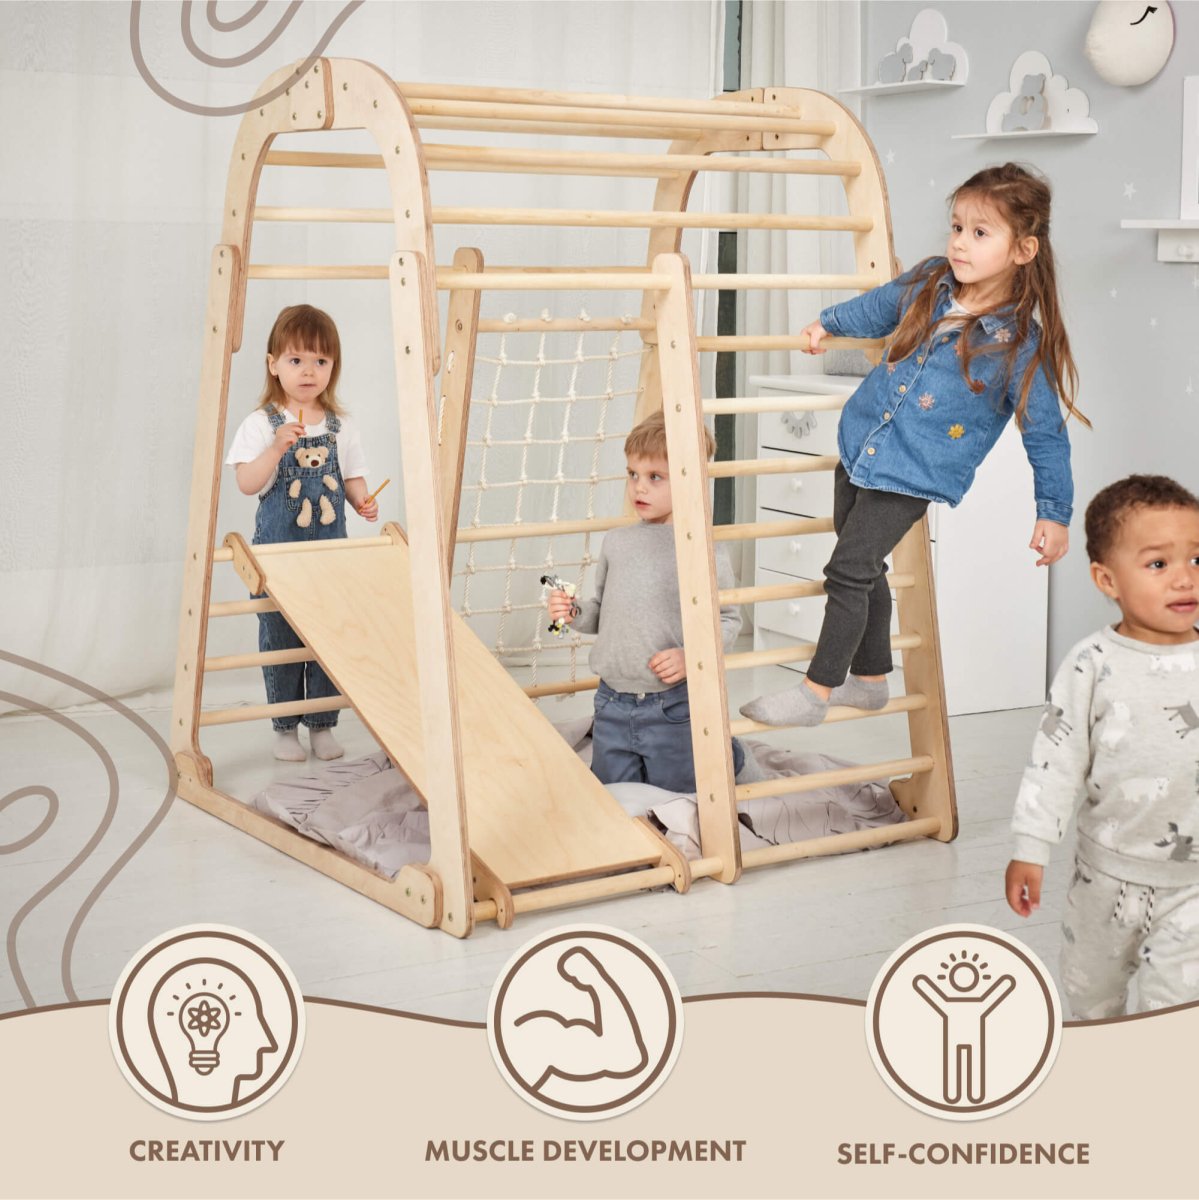 Indoor Wooden Playground for Children - 6in1 Playground + Swings Set + Slide Board Goodevas